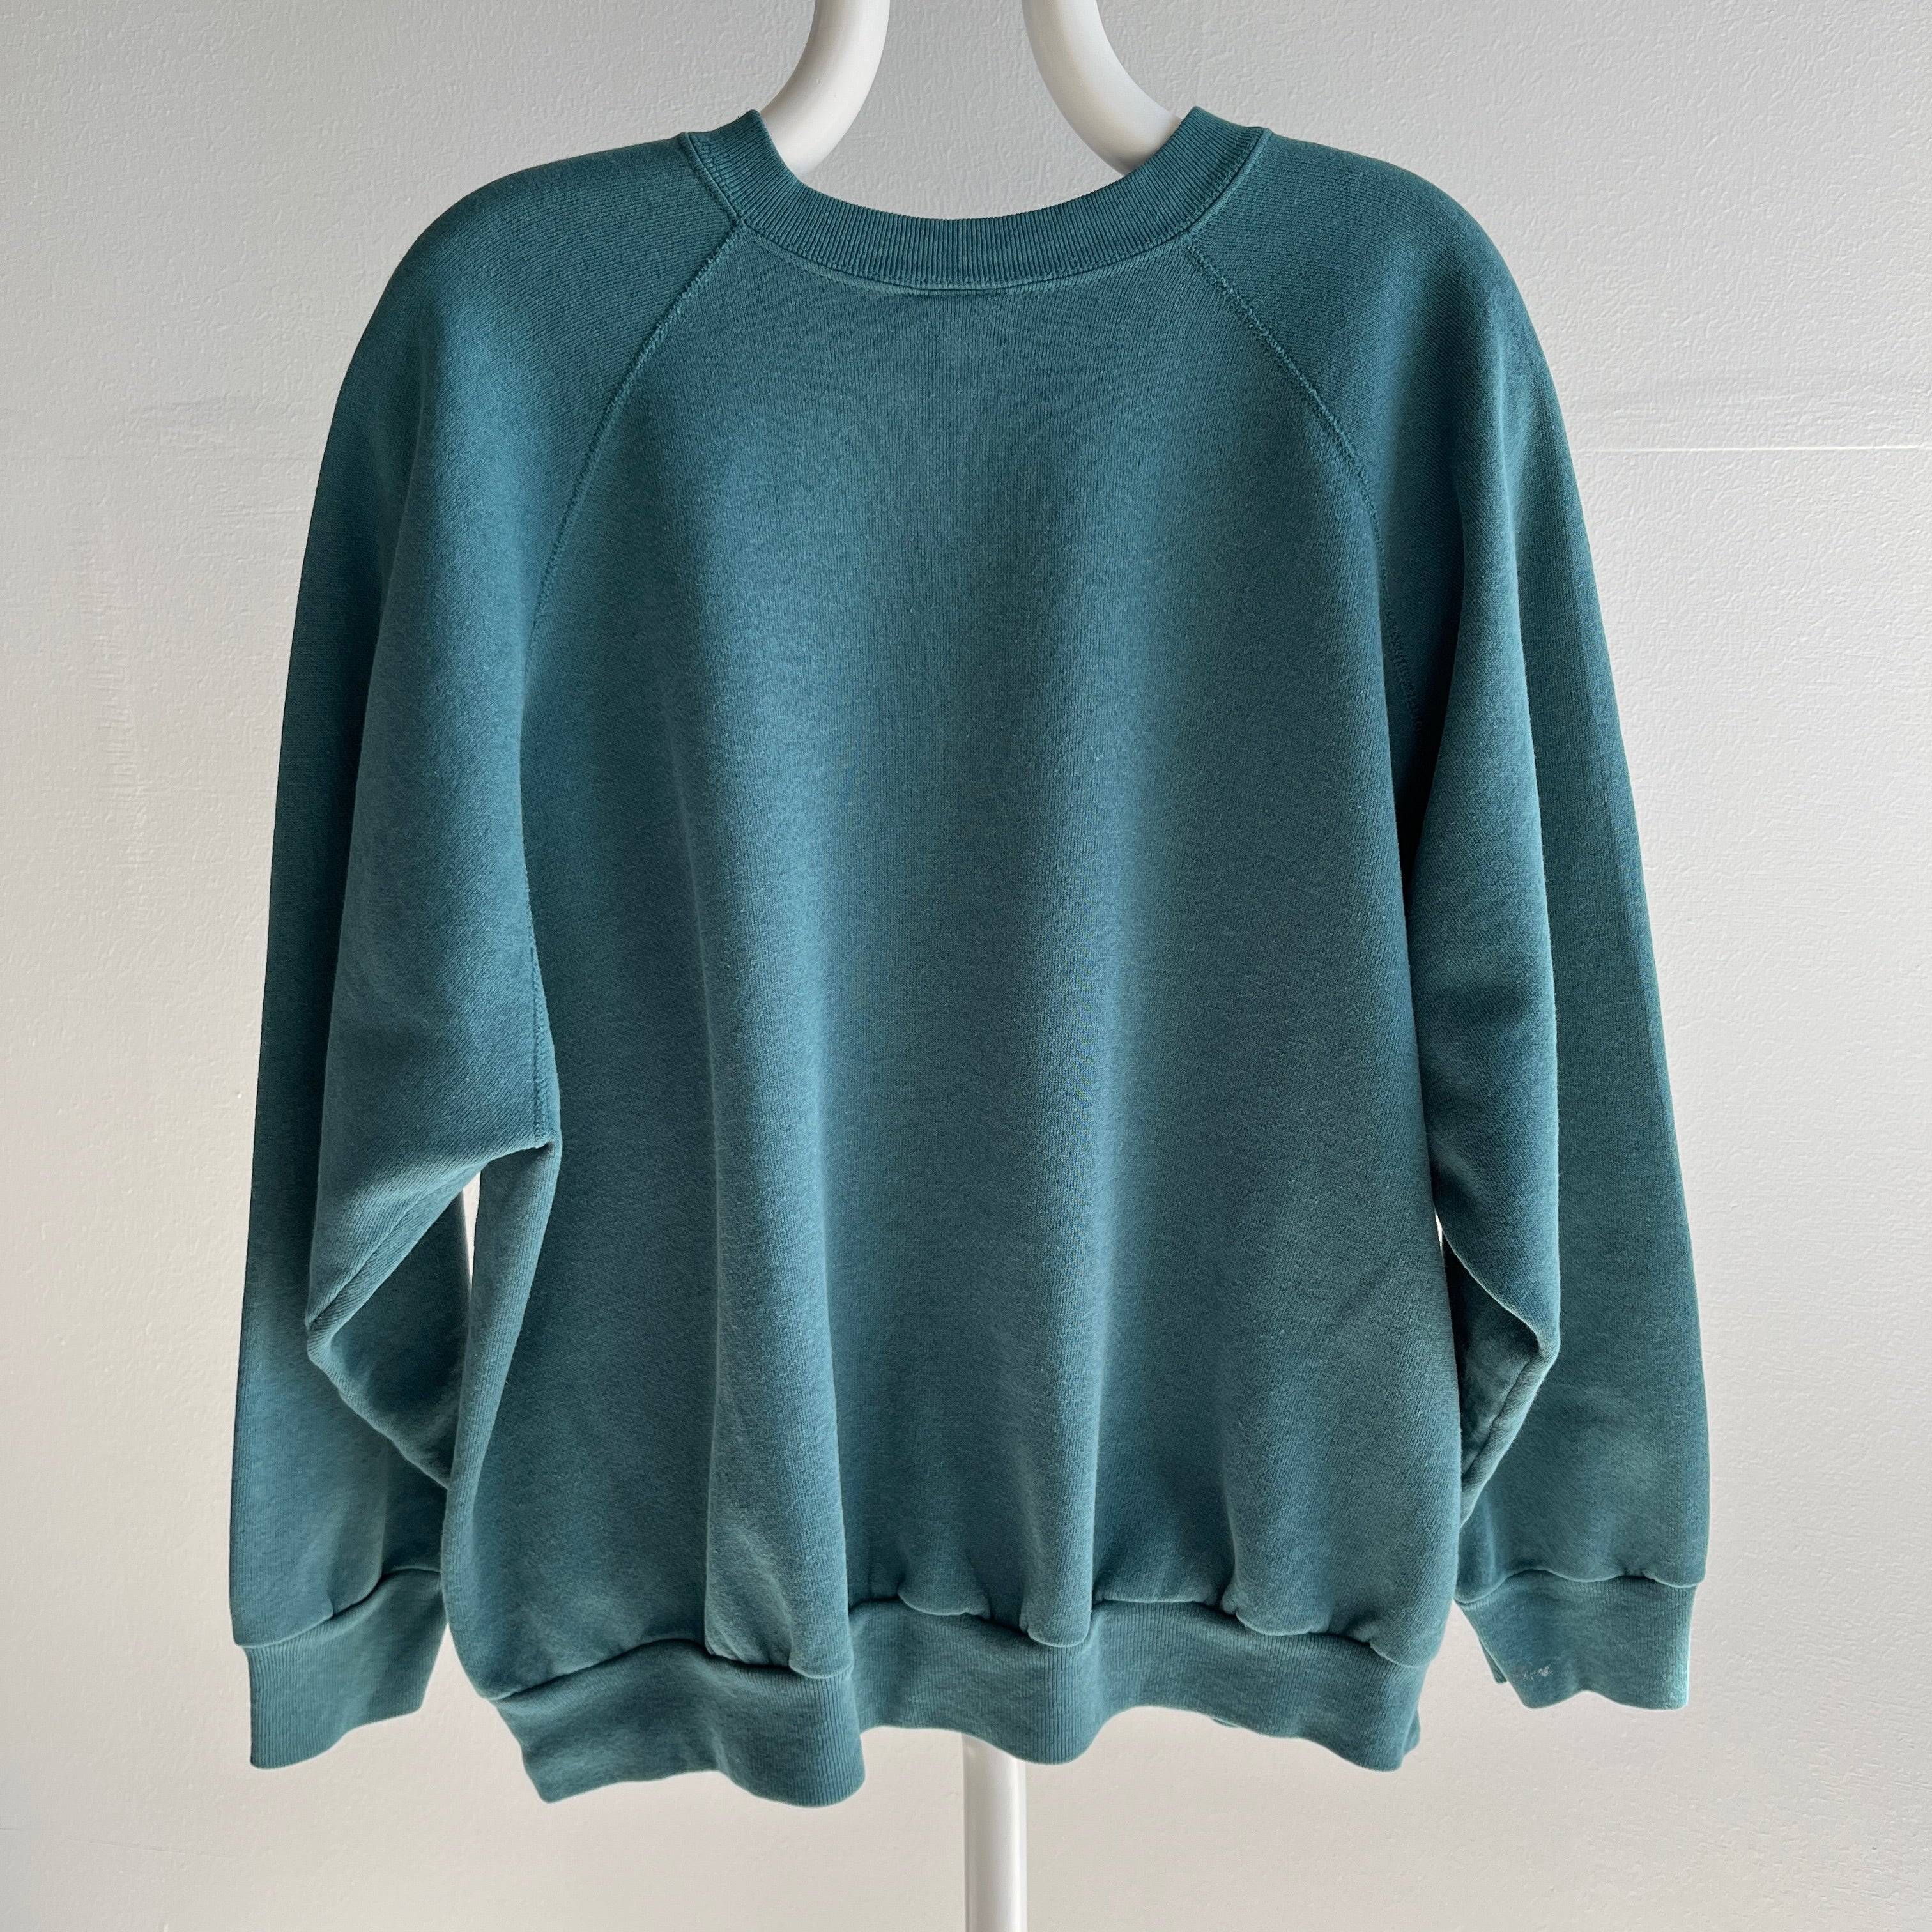 1990s Deep Aqua Sweatshirt by Tultex